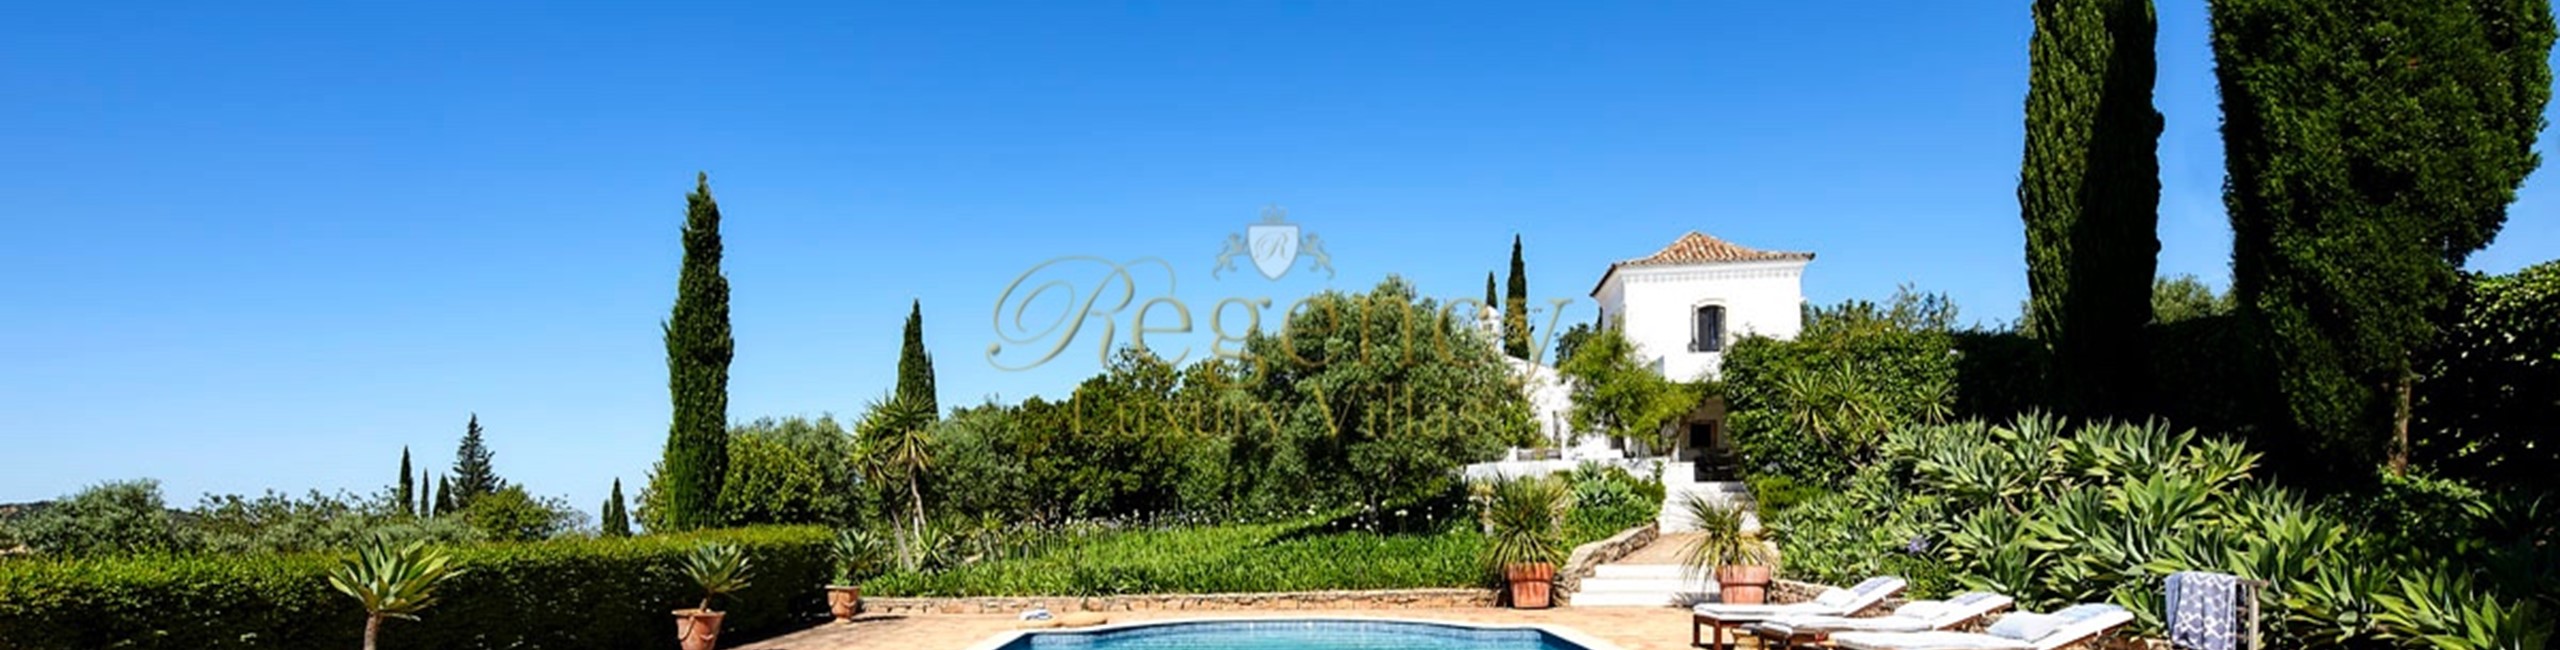 Family Villa To Rent In The Algarve